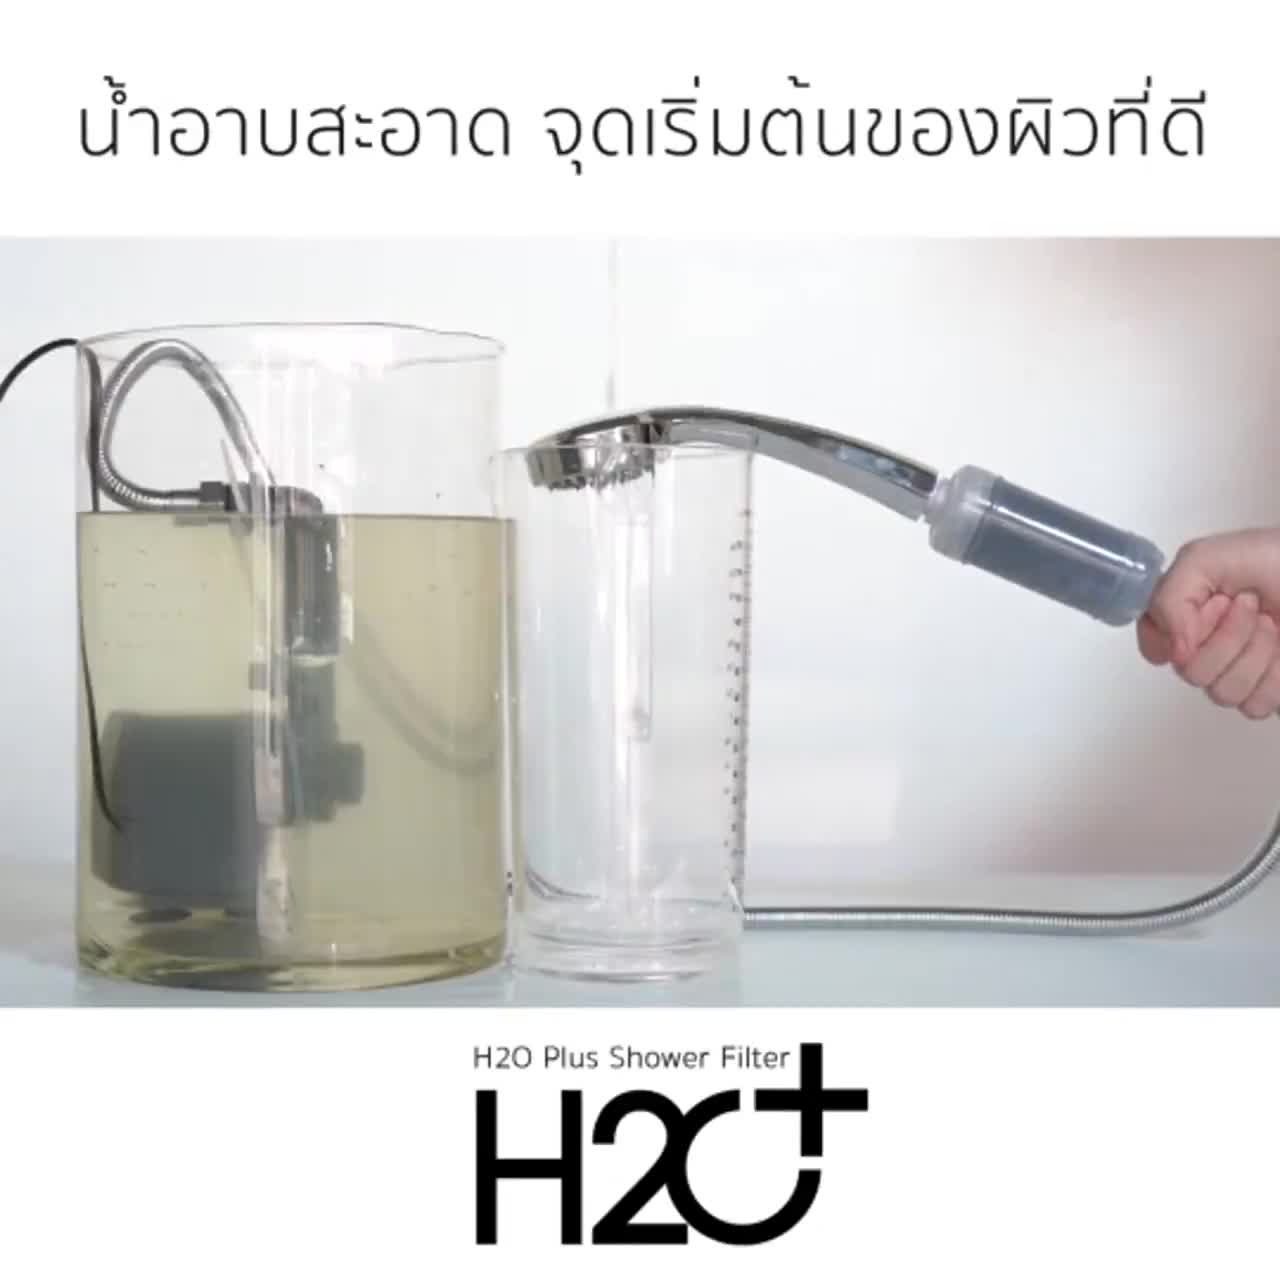 h2o-plus-shower-filter-ที่กรองน้ำฝักบัวคนเป็นสิว-ผิวแพ้ง่าย-แพ้น้ำ-แพ้คลอรีน-pp-activated-carbon-4-ชิ้น